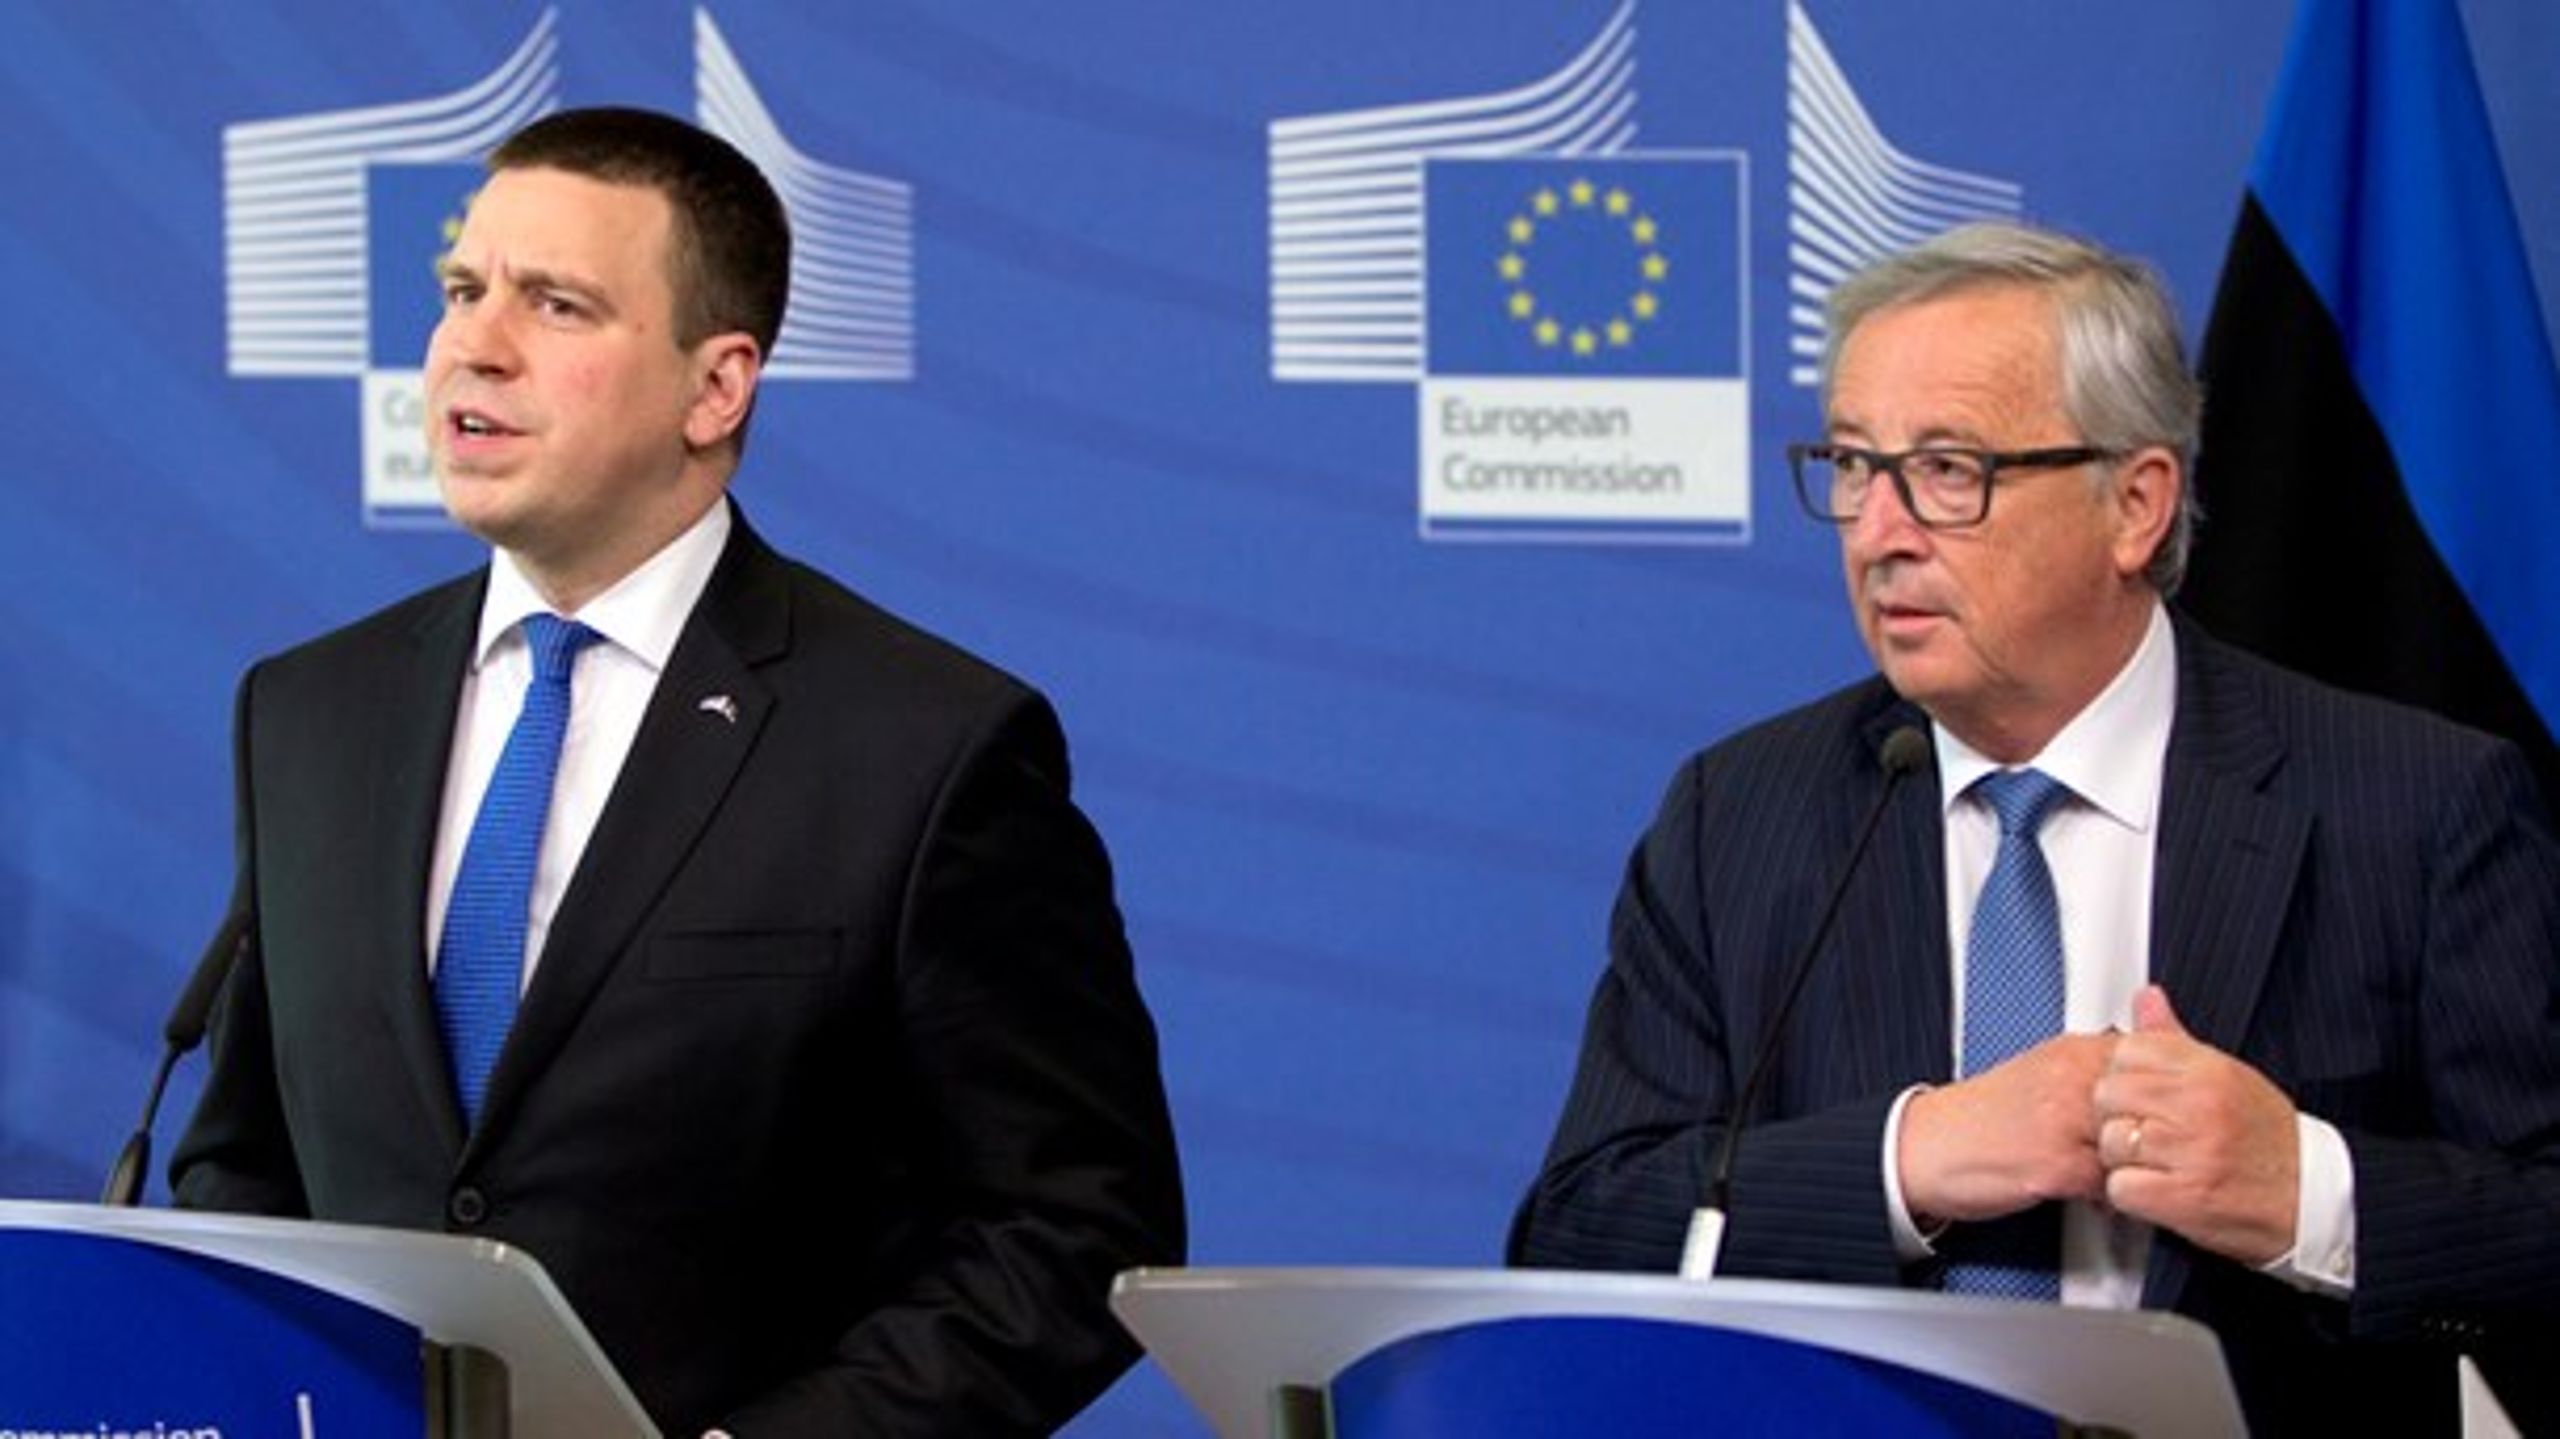 Den estiske premierminister, Juri Ratas, sammen med EU-Kommissionens formand, Jean-Claude Juncker. Estland overtager 1. juli det roterende EU-formandskab.